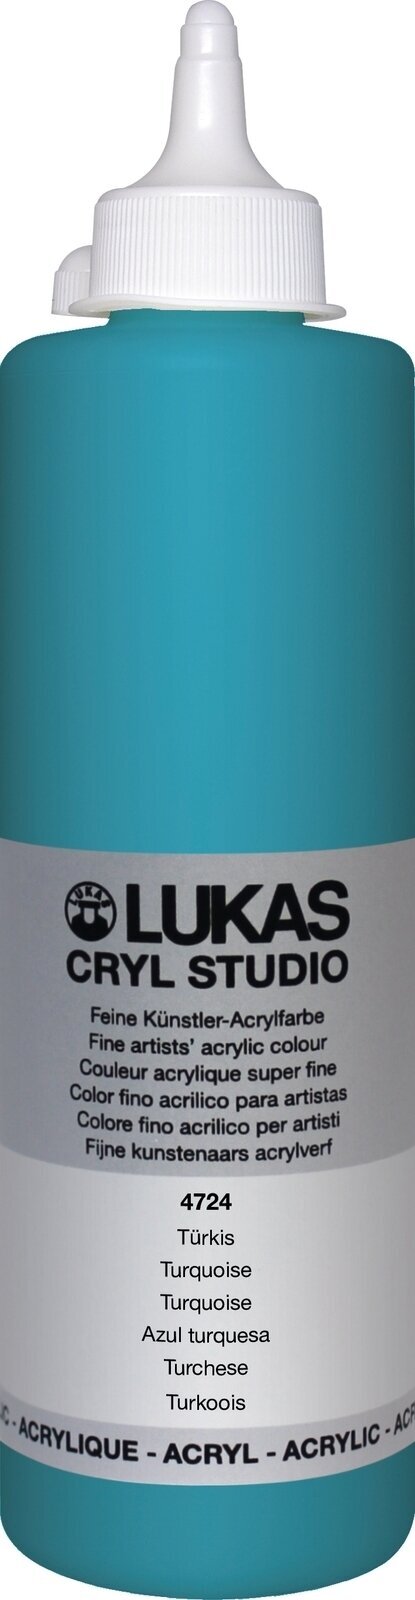 Pintura acrílica Lukas Cryl Studio Acrylic Paint 500 ml Turquoise Pintura acrílica